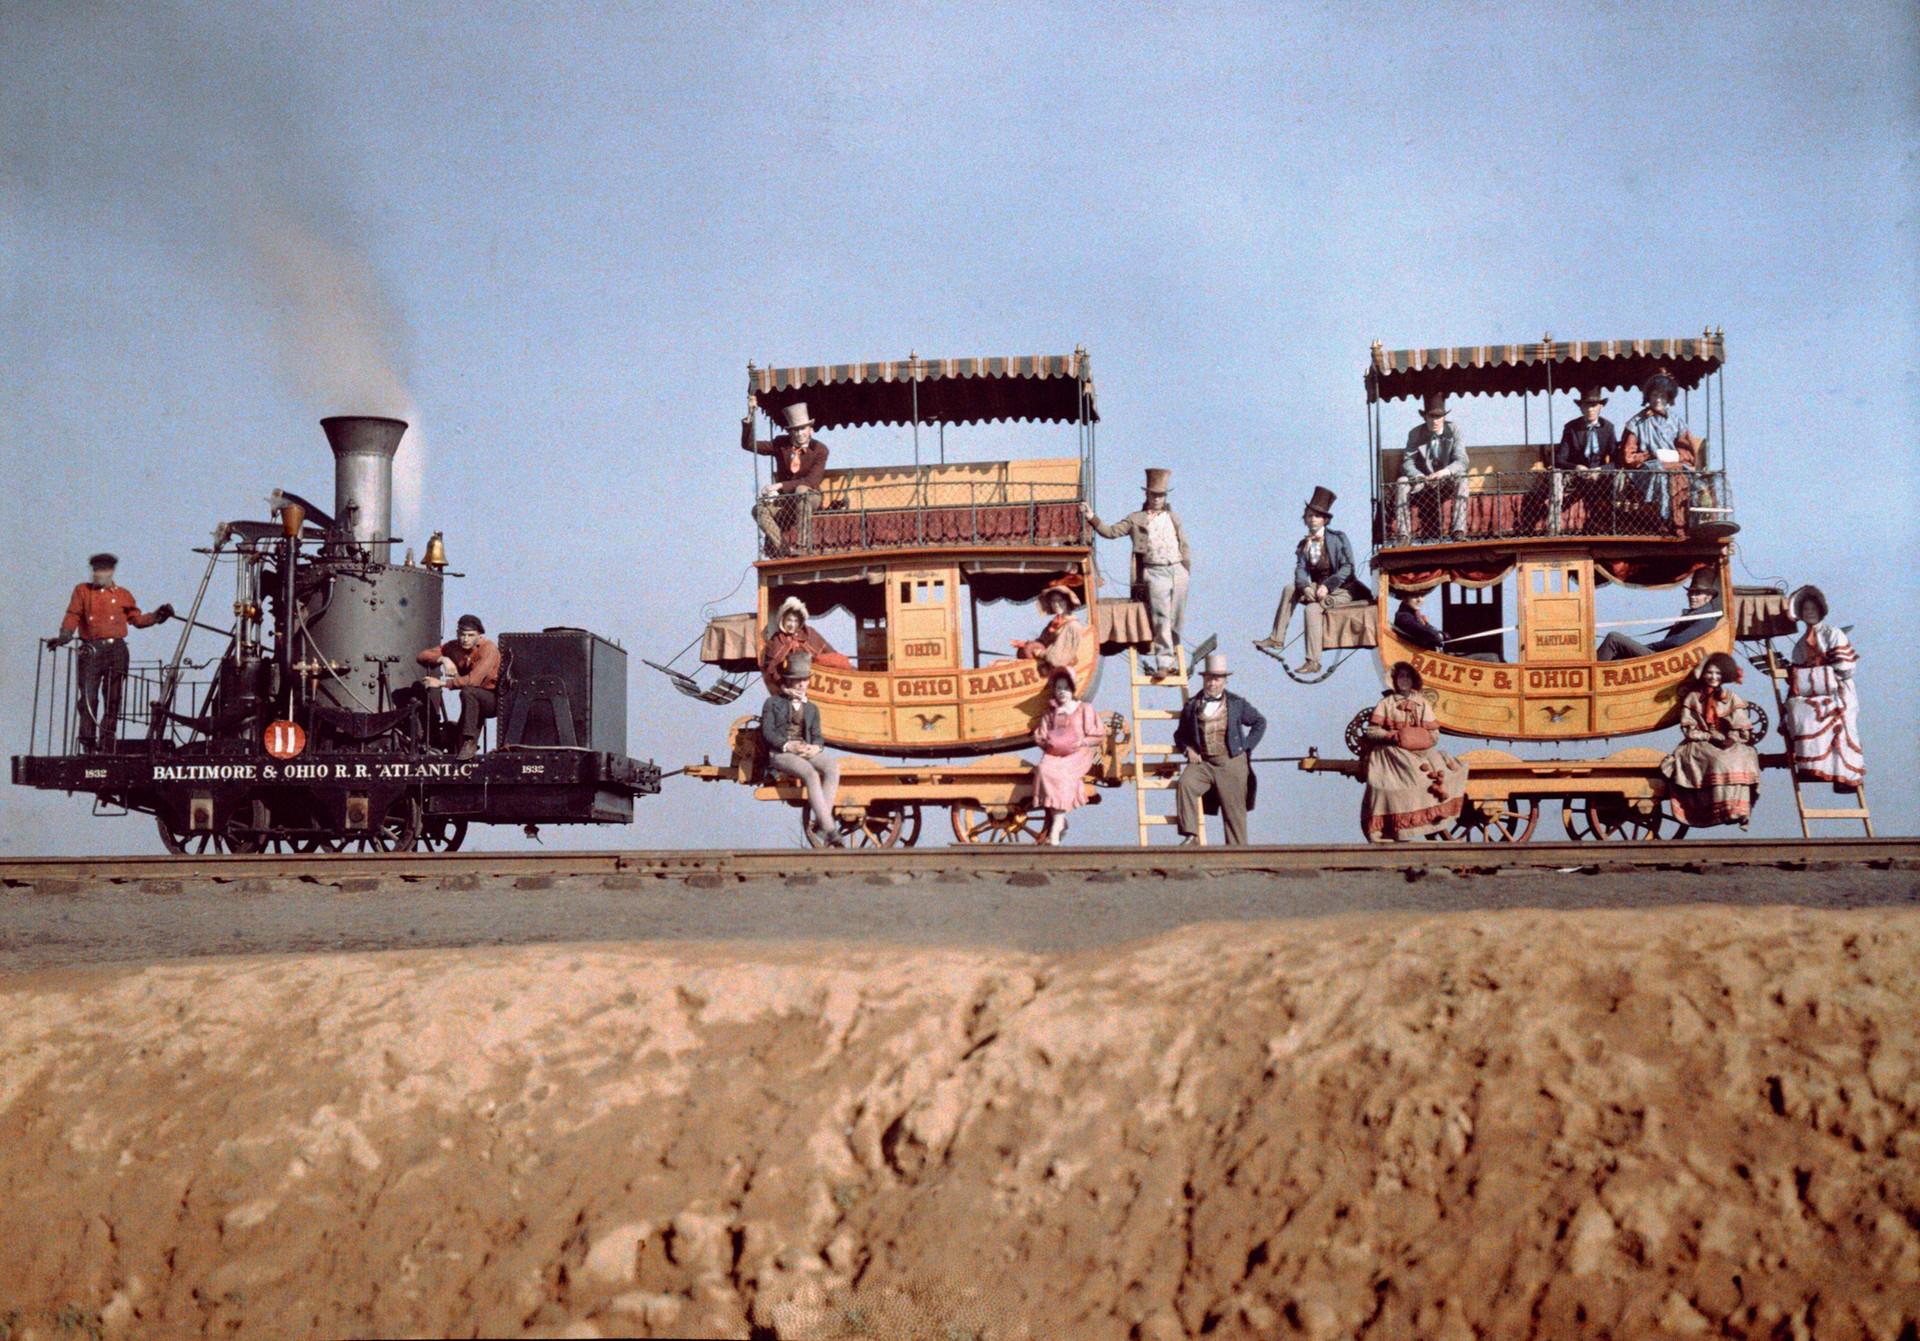 Локомотив и два вагона Atlantic на железнодорожной выставке близ Балтимора, штат Мэриленд, 1927. Автохром, фотограф Чарльз Мартин